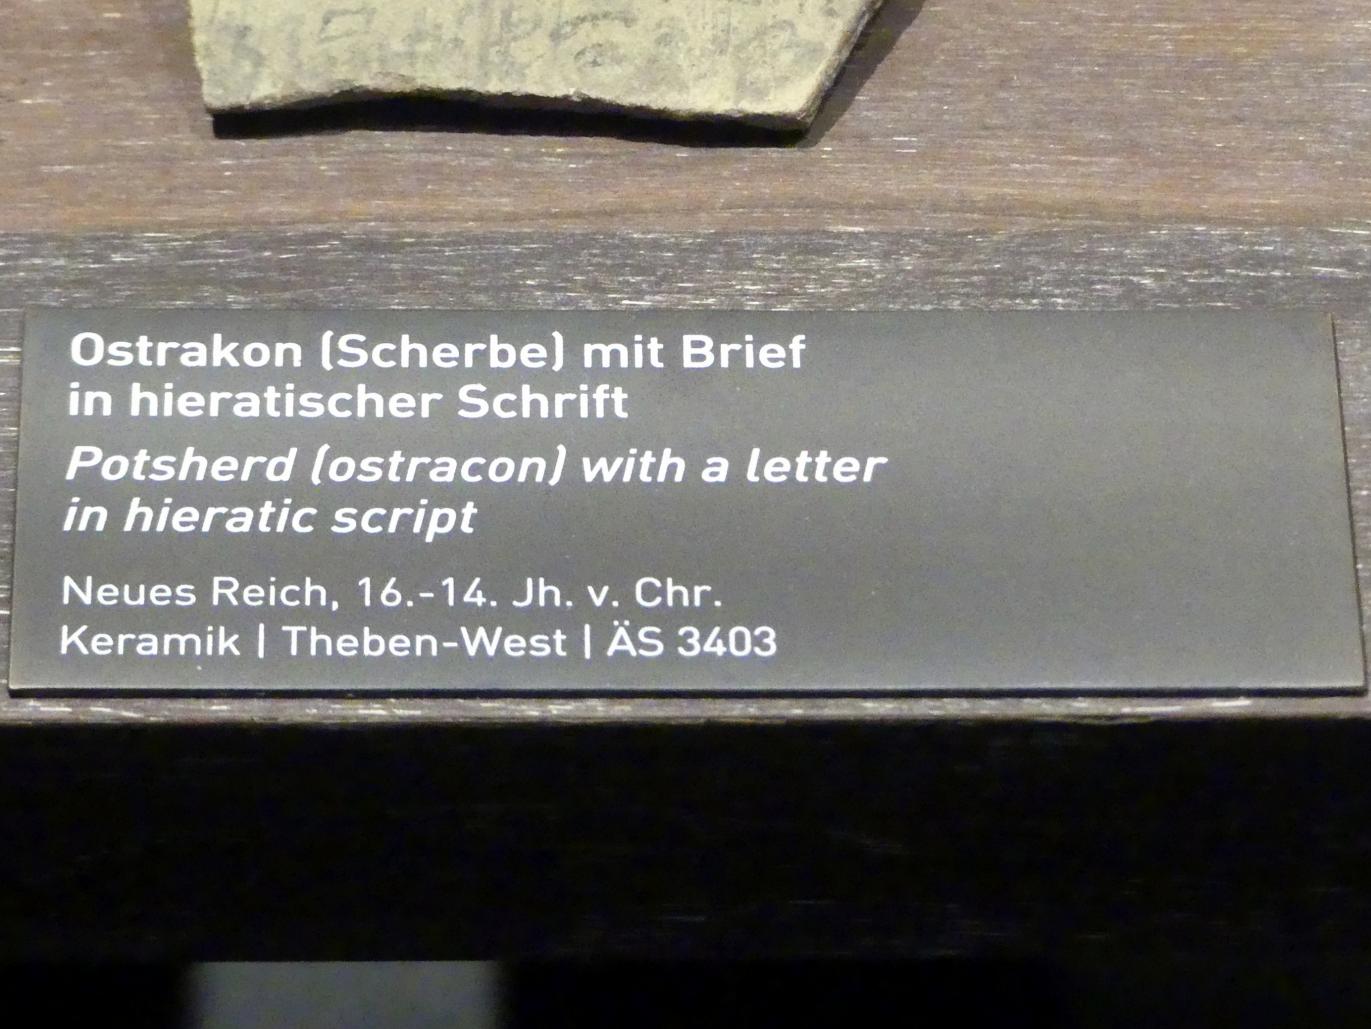 Ostrakon (Scherbe) mit Brief in hieratischer  Schrift, Neues Reich, 953 - 887 v. Chr., 1600 - 1300 v. Chr., Bild 2/2